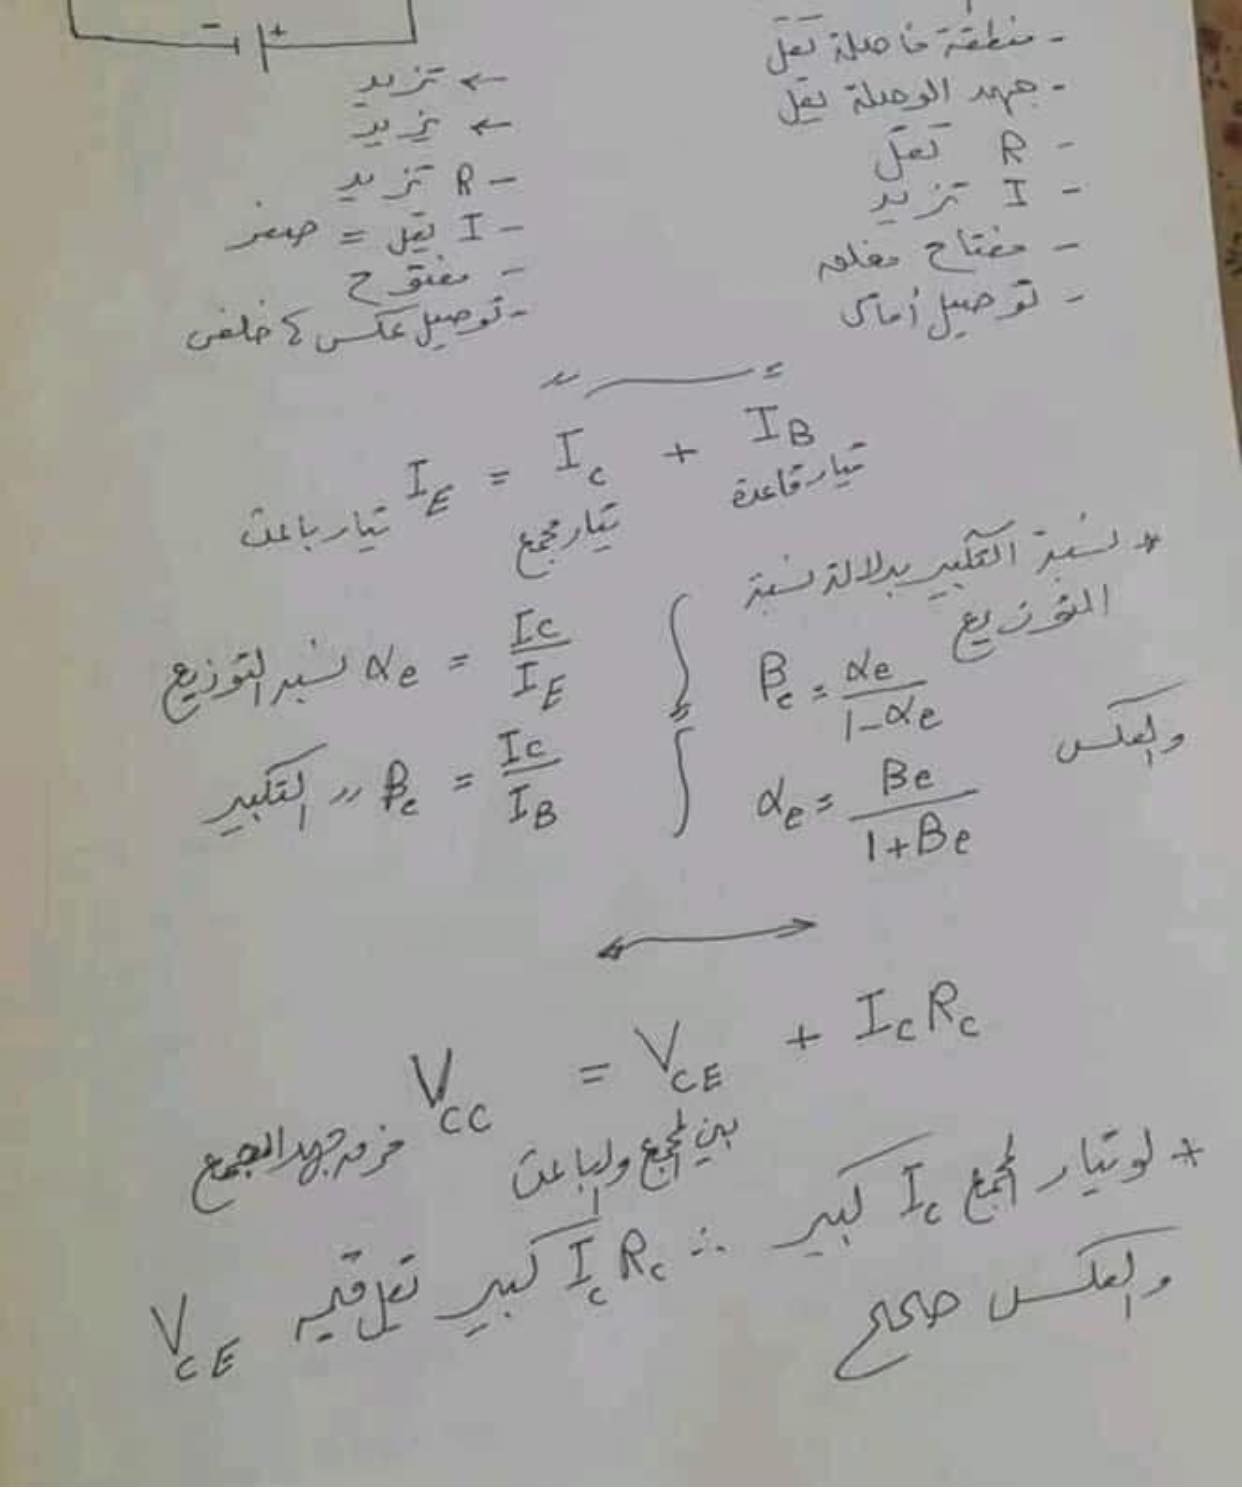 مدرس دوت كوم ملخص تريكات الفيزياء للصف الثالث الثانوي 2021 أ/ محمد الهلاوي	